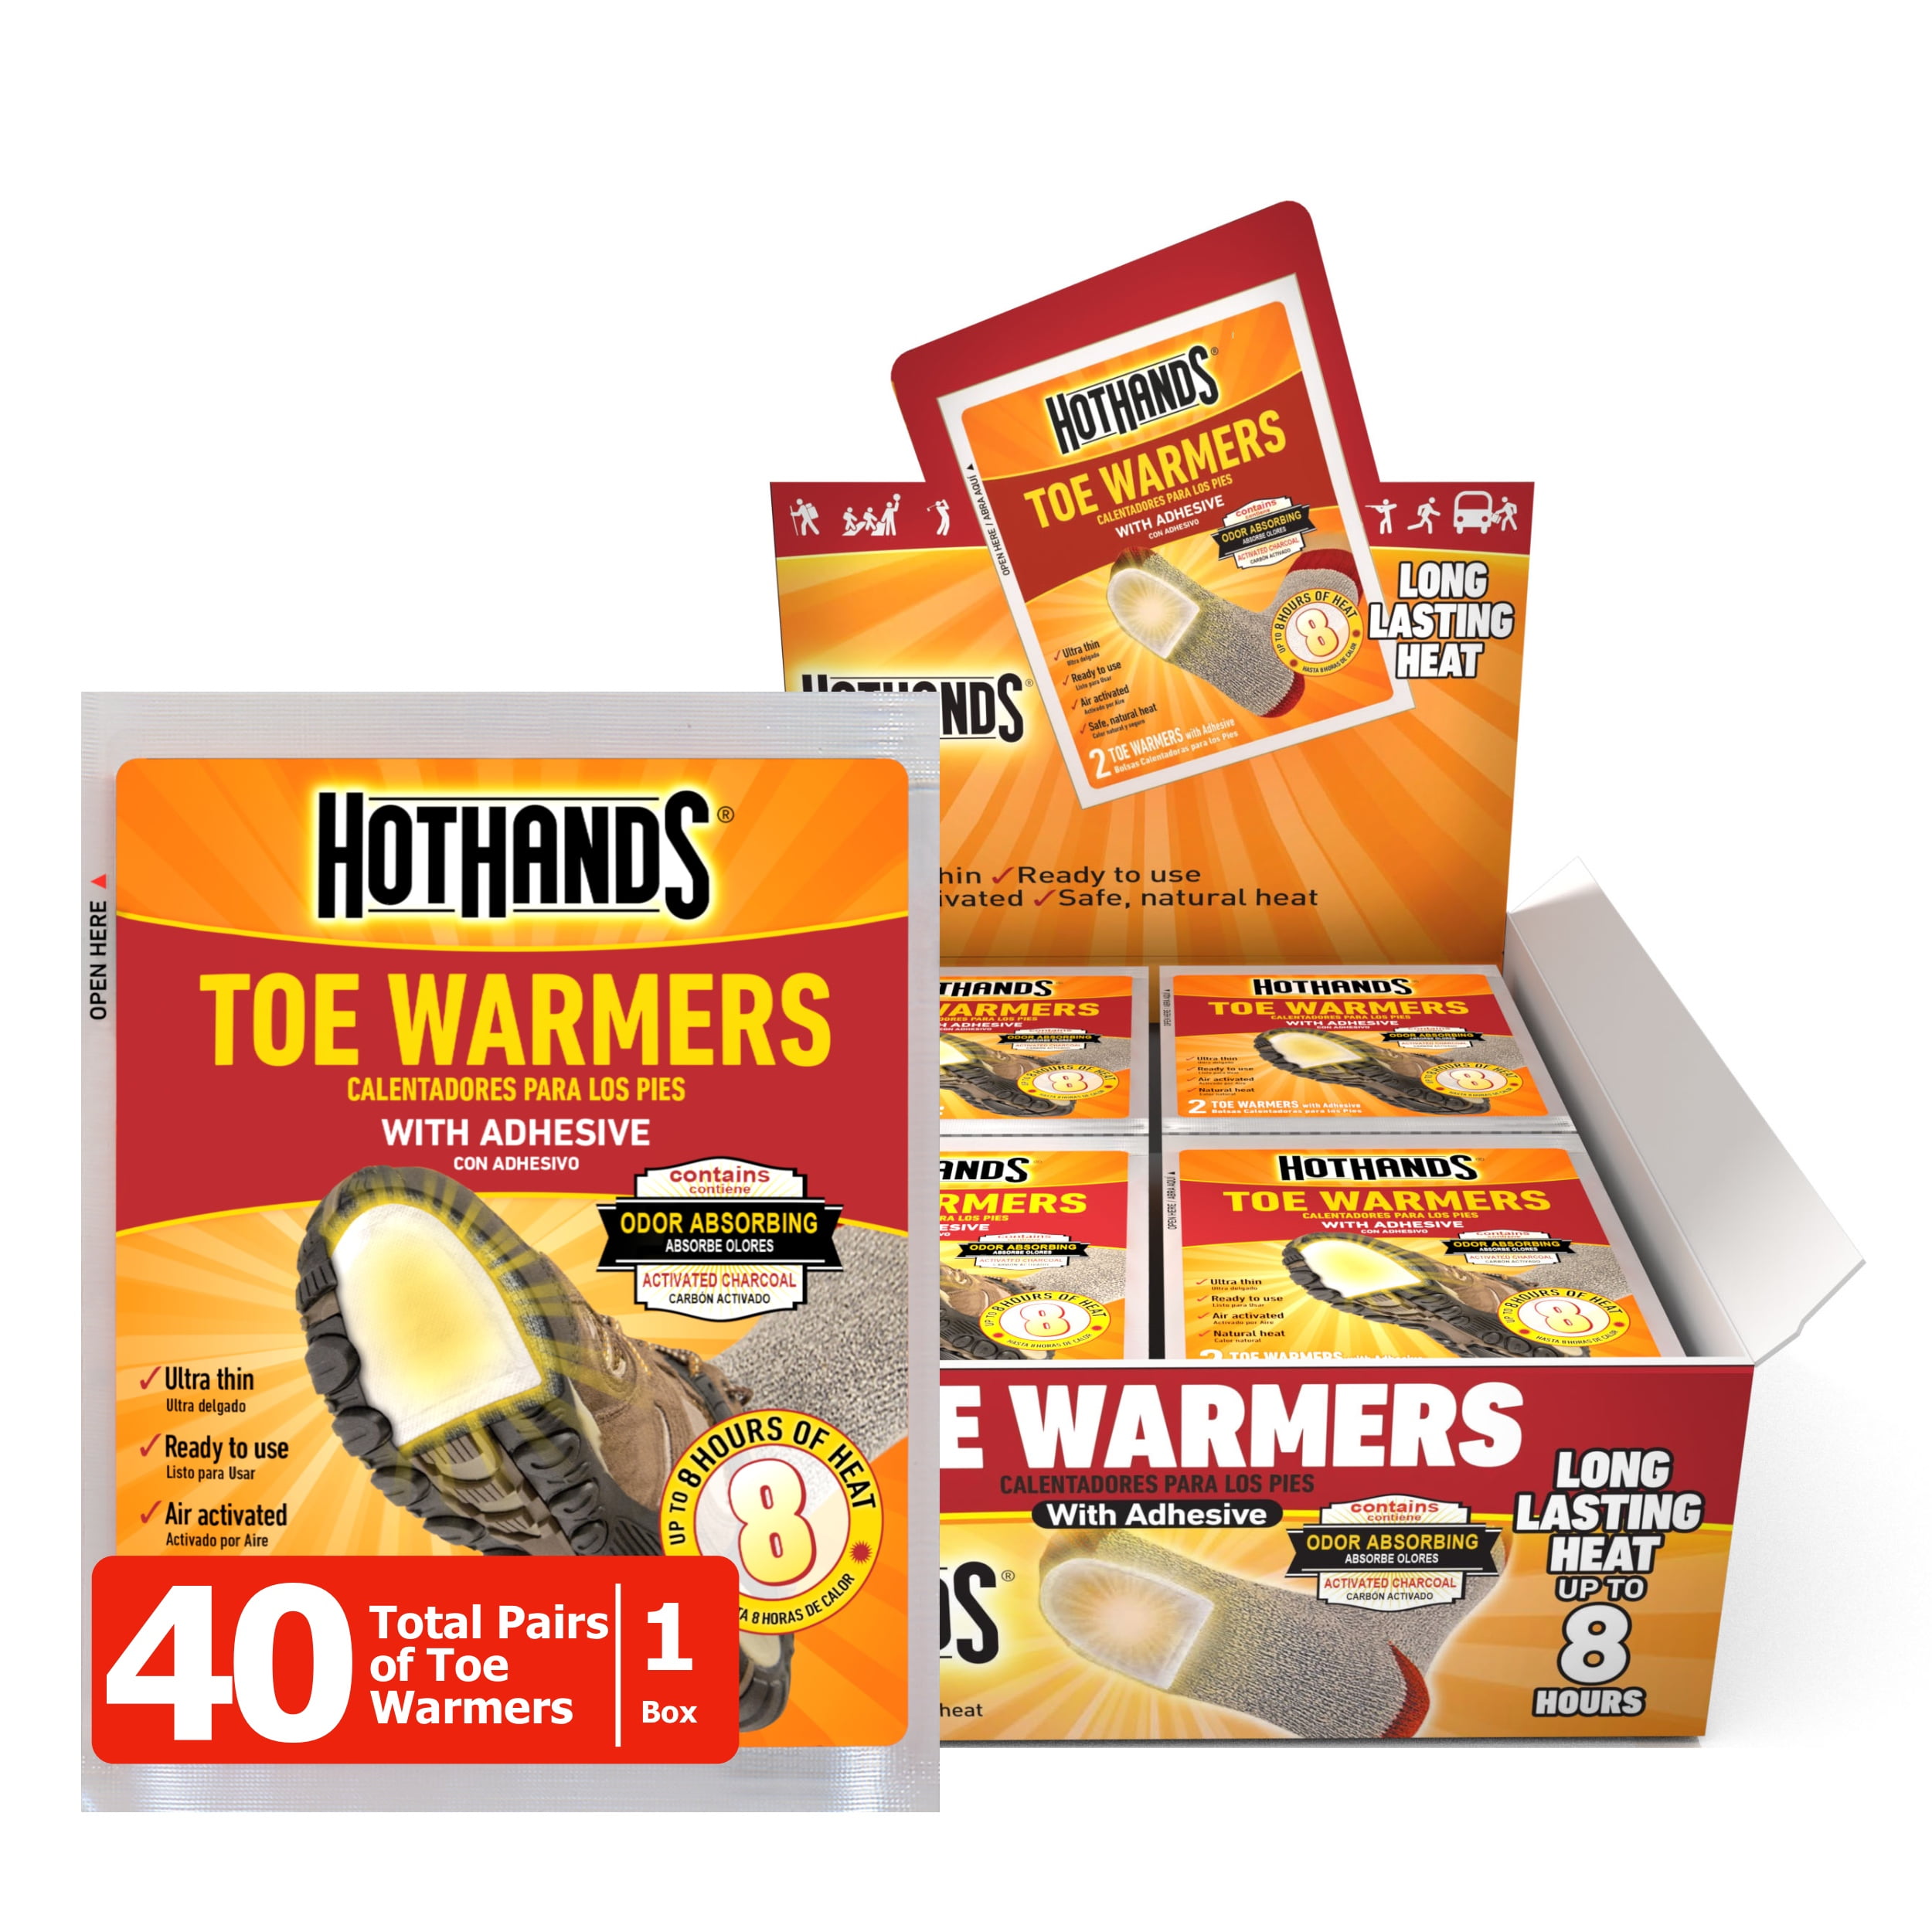 Hot Hands Handwarmer 80 Warmers (40 Pairs) - HotHands Hand Warmer